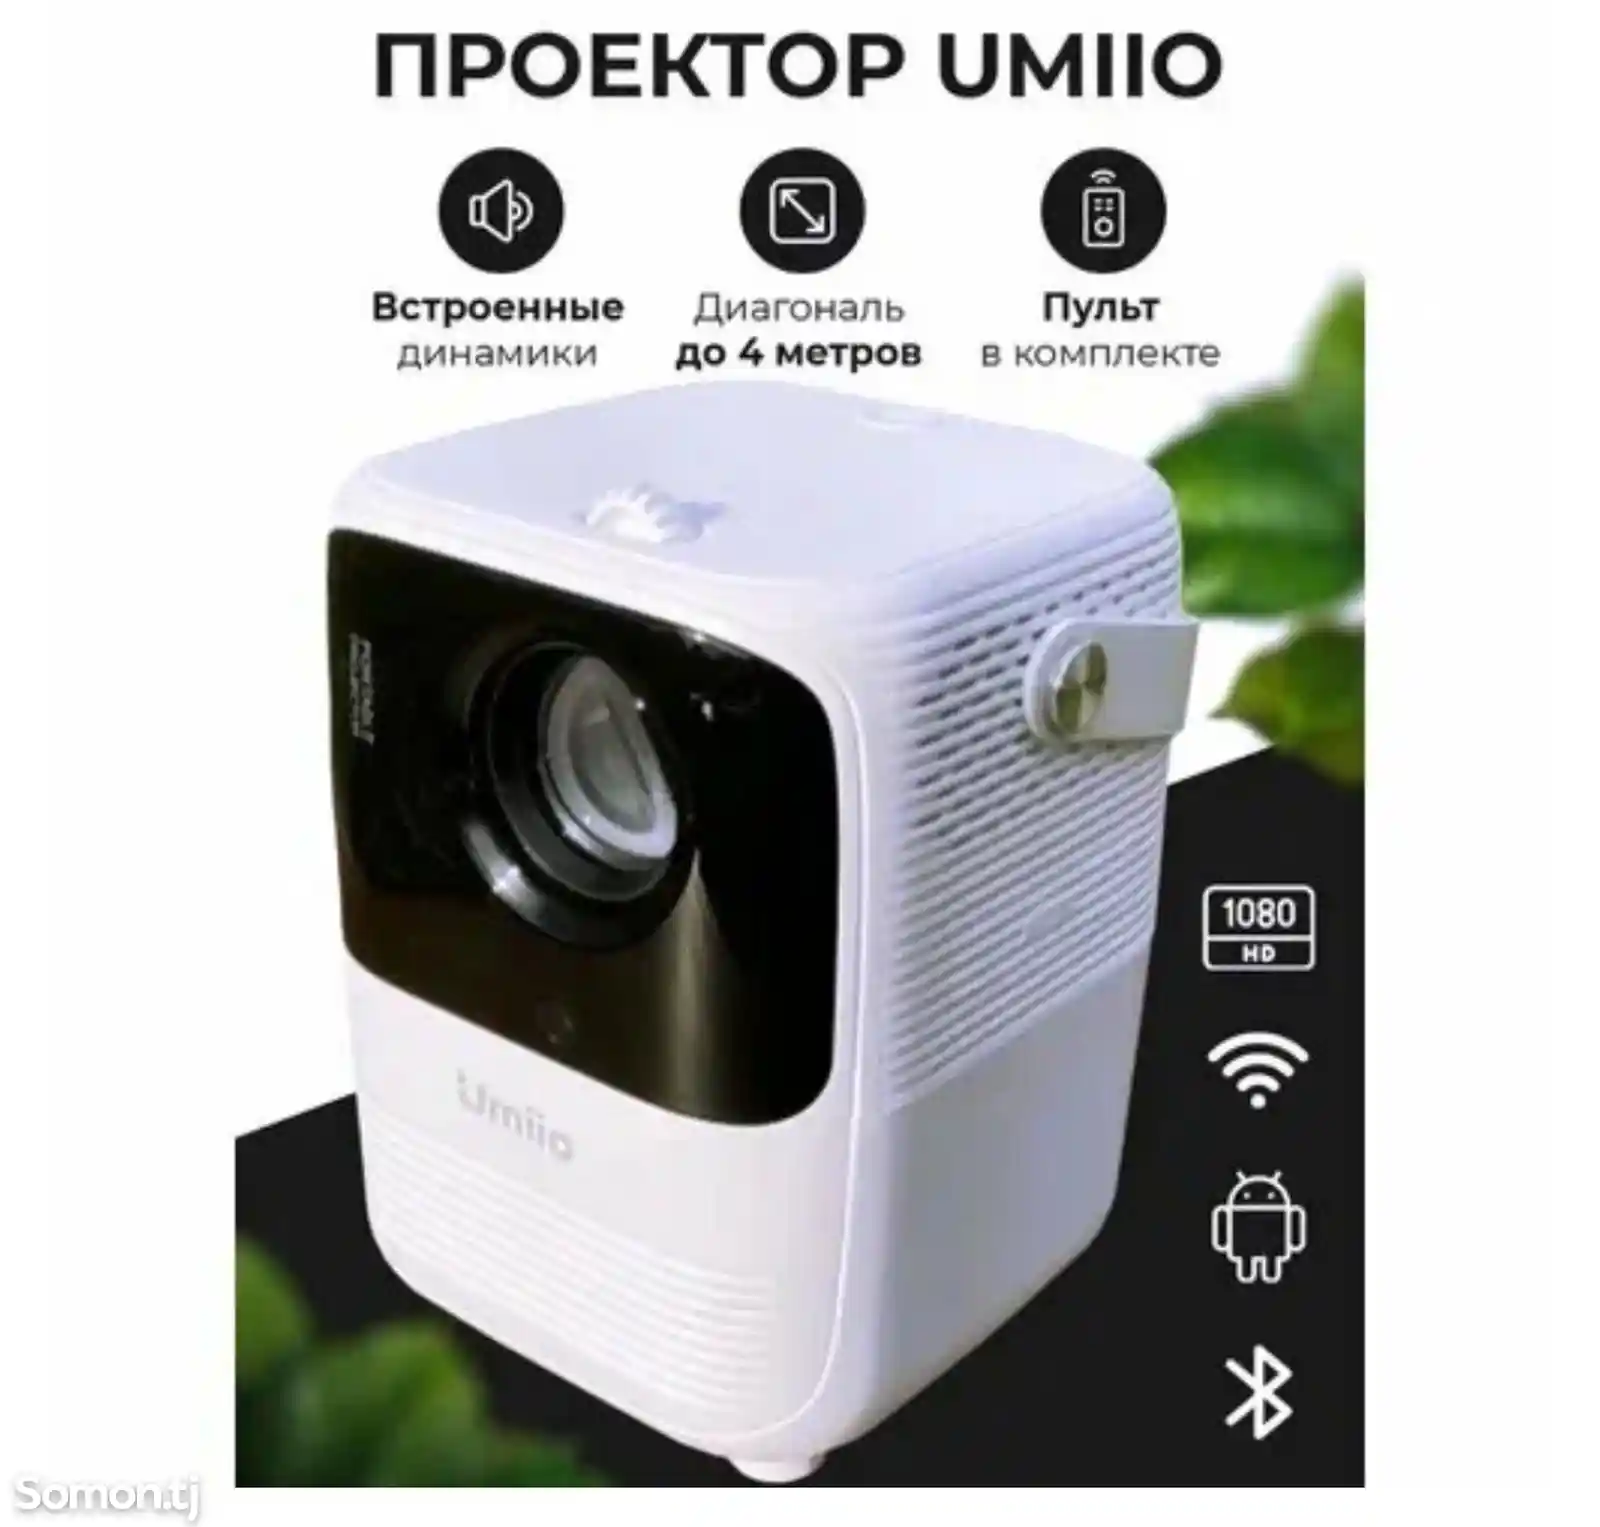 Портативный проектор Umiio для фильмов, YouTube-8